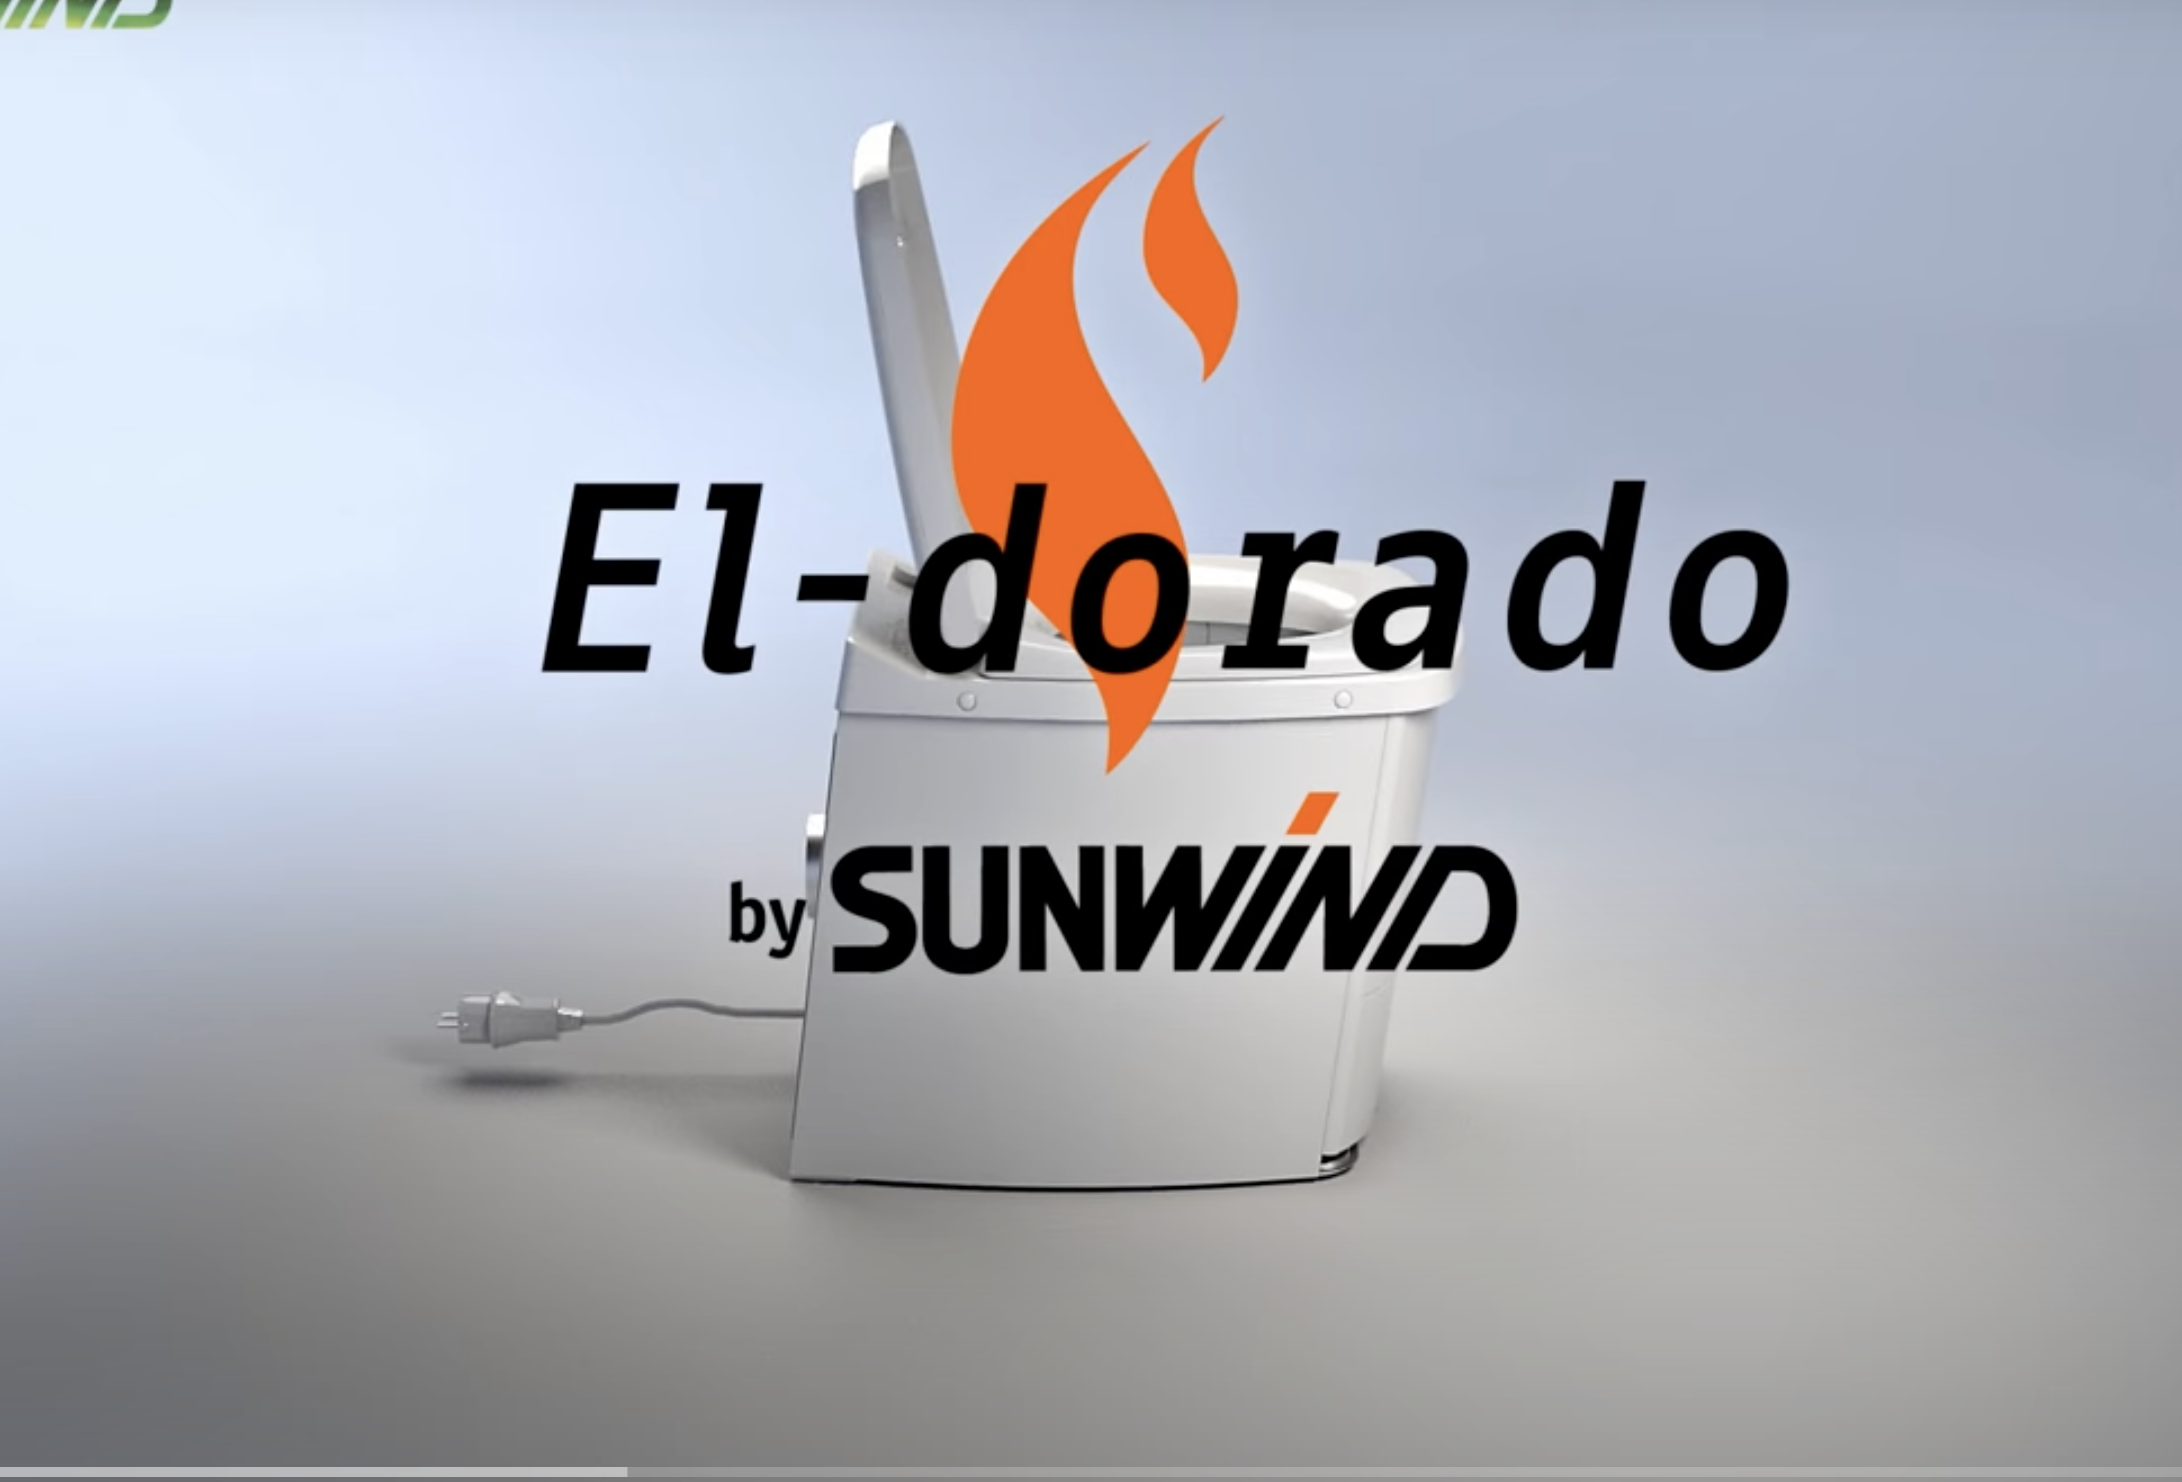 Forbrenningstoalett El-dorado fra Sunwind